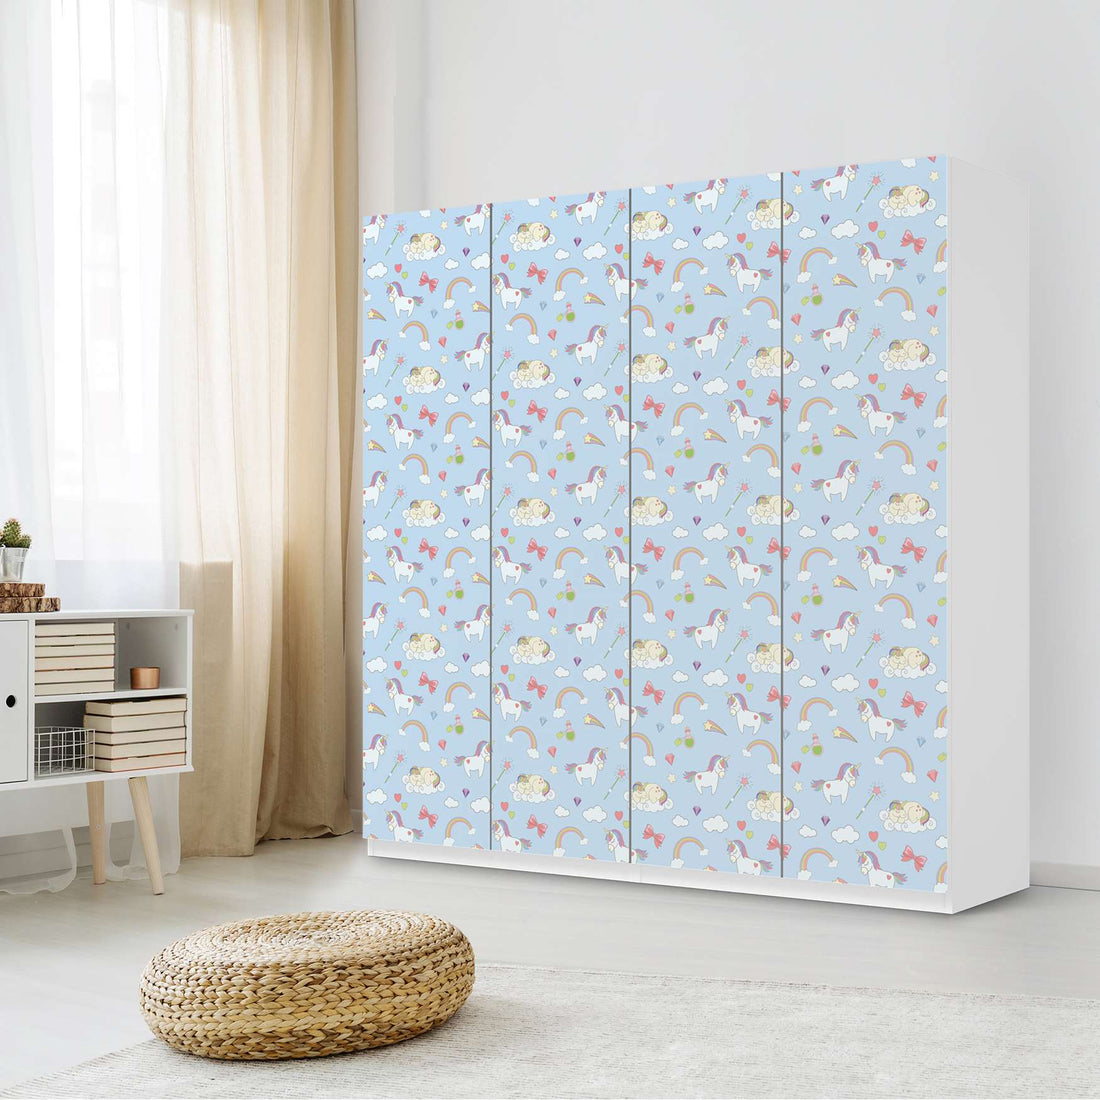 Klebefolie für Schränke Rainbow Unicorn - IKEA Pax Schrank 201 cm Höhe - 4 Türen - Kinderzimmer